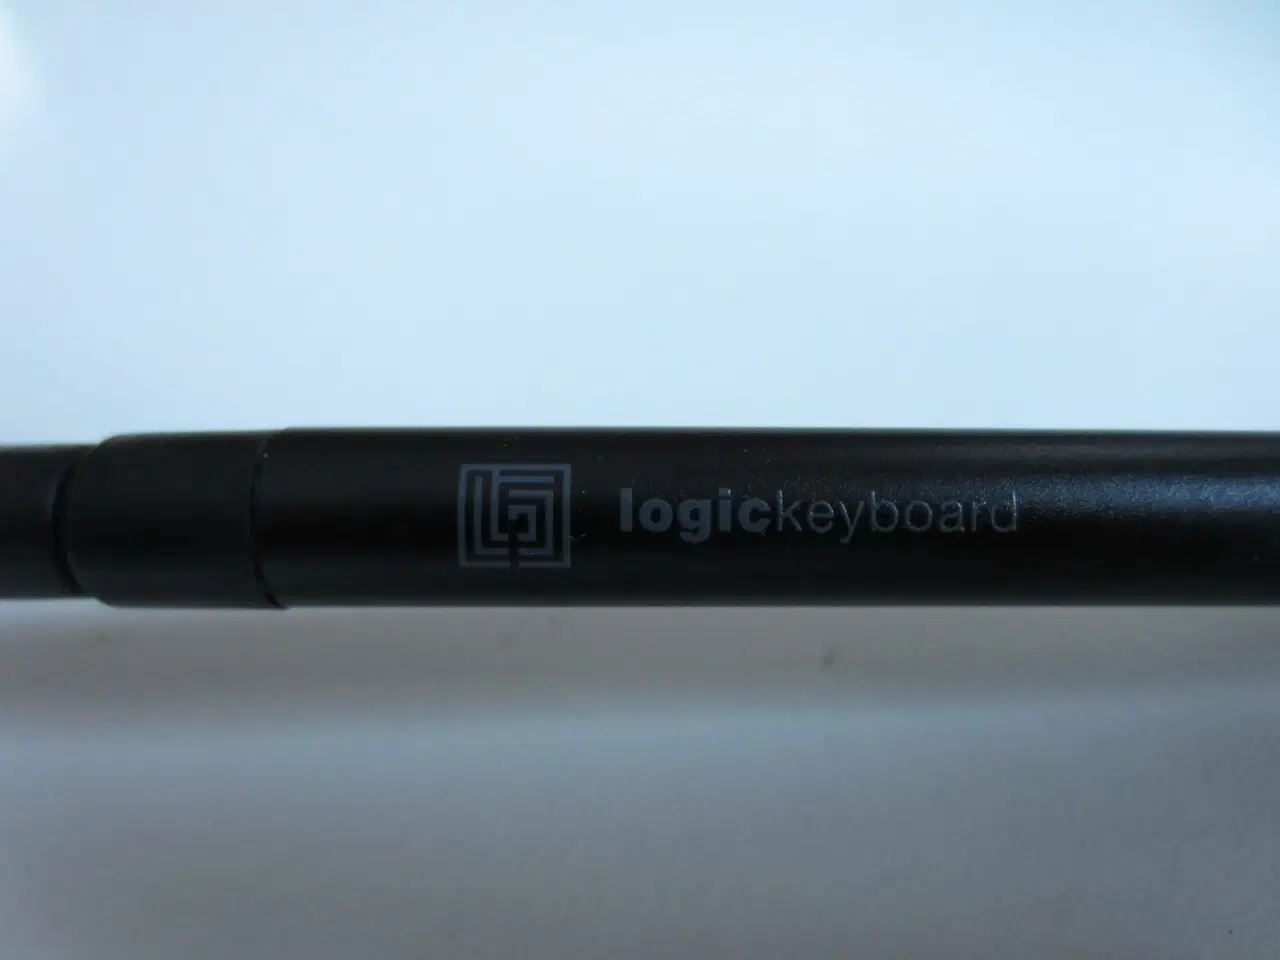 Billede 4 - logickeyboard logiclight LED lampe med USB stik